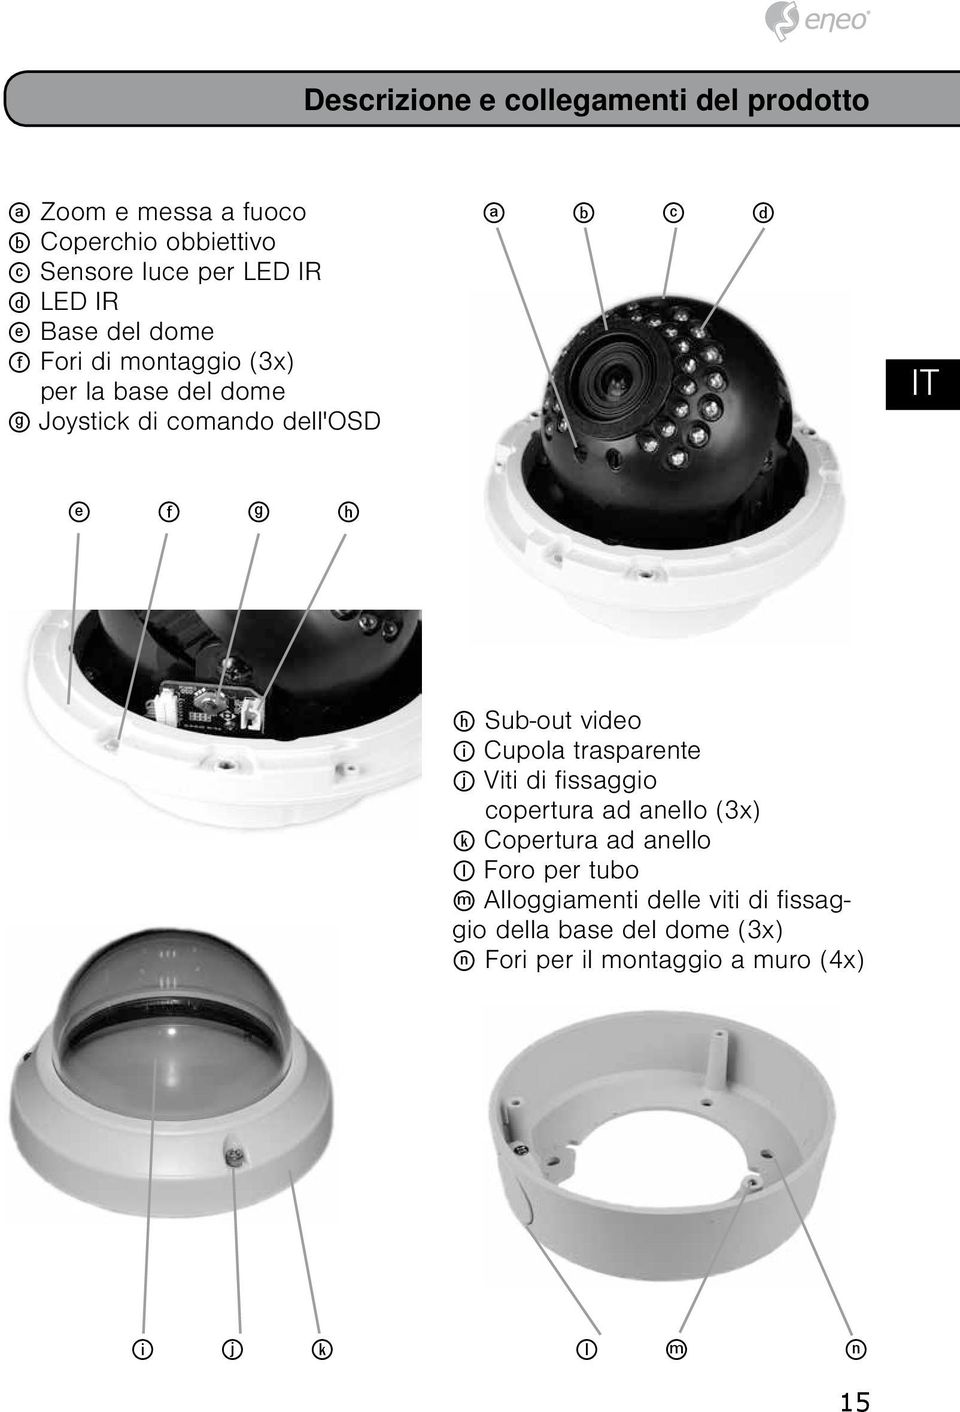 ES RO h Sub-out video i Cupola trasparente j Viti di fissaggio copertura ad anello (3x) k Copertura ad anello l Foro